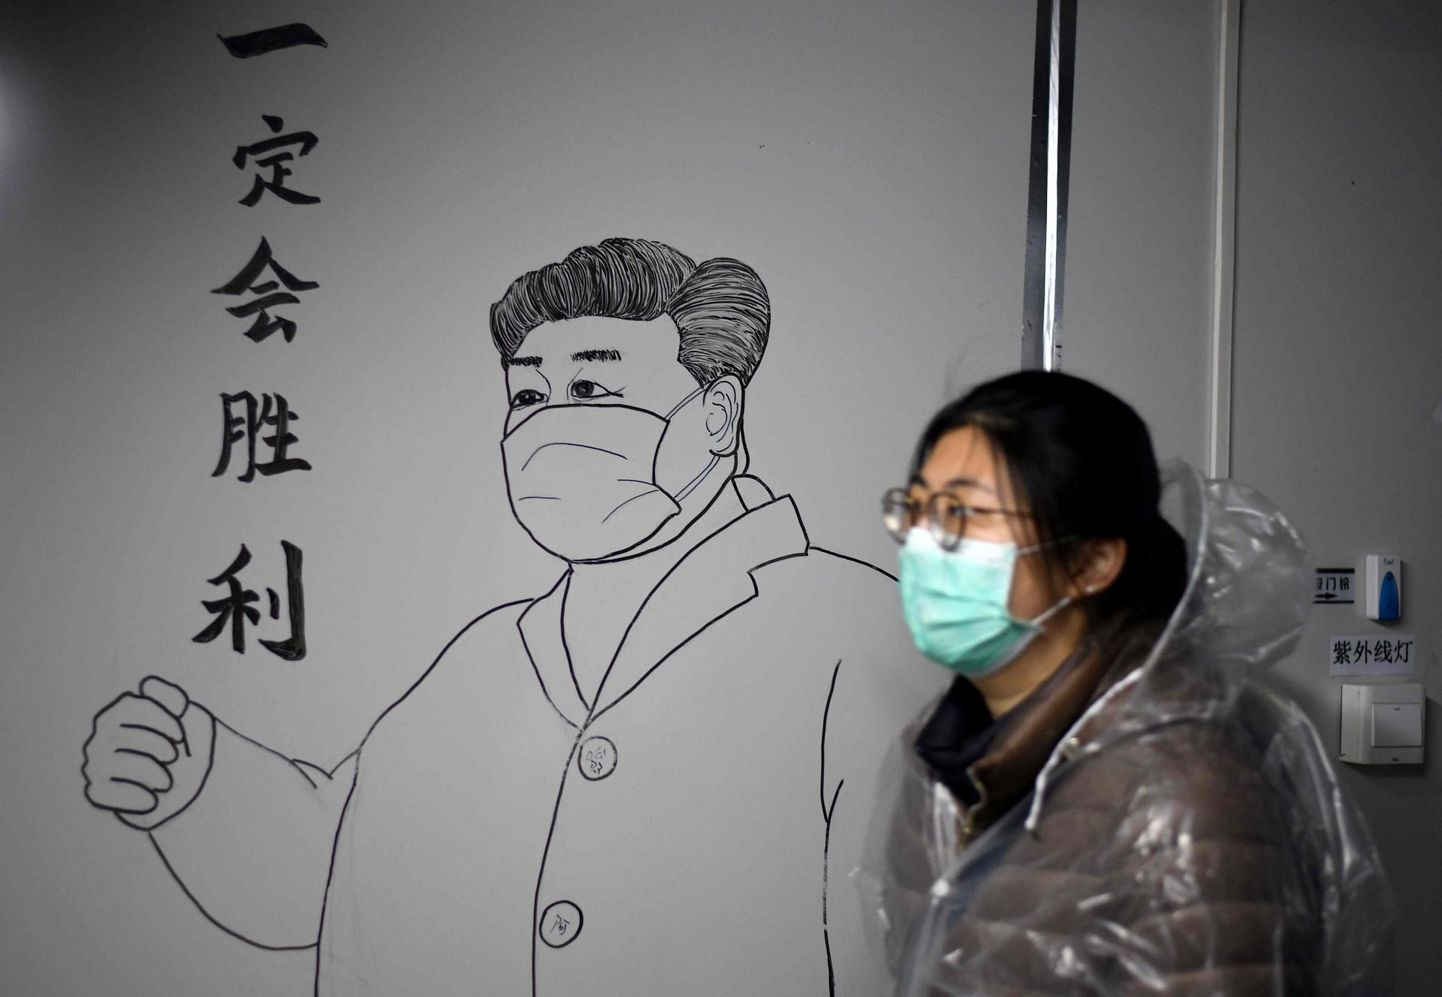 Näomaskis naine möödub Hiina presidendi Xi Jinpingi pildist, mis on joonistaud Hubei provintsis Leishenshani koroonaviiruse patsientidele ehitatud haigla seinale.